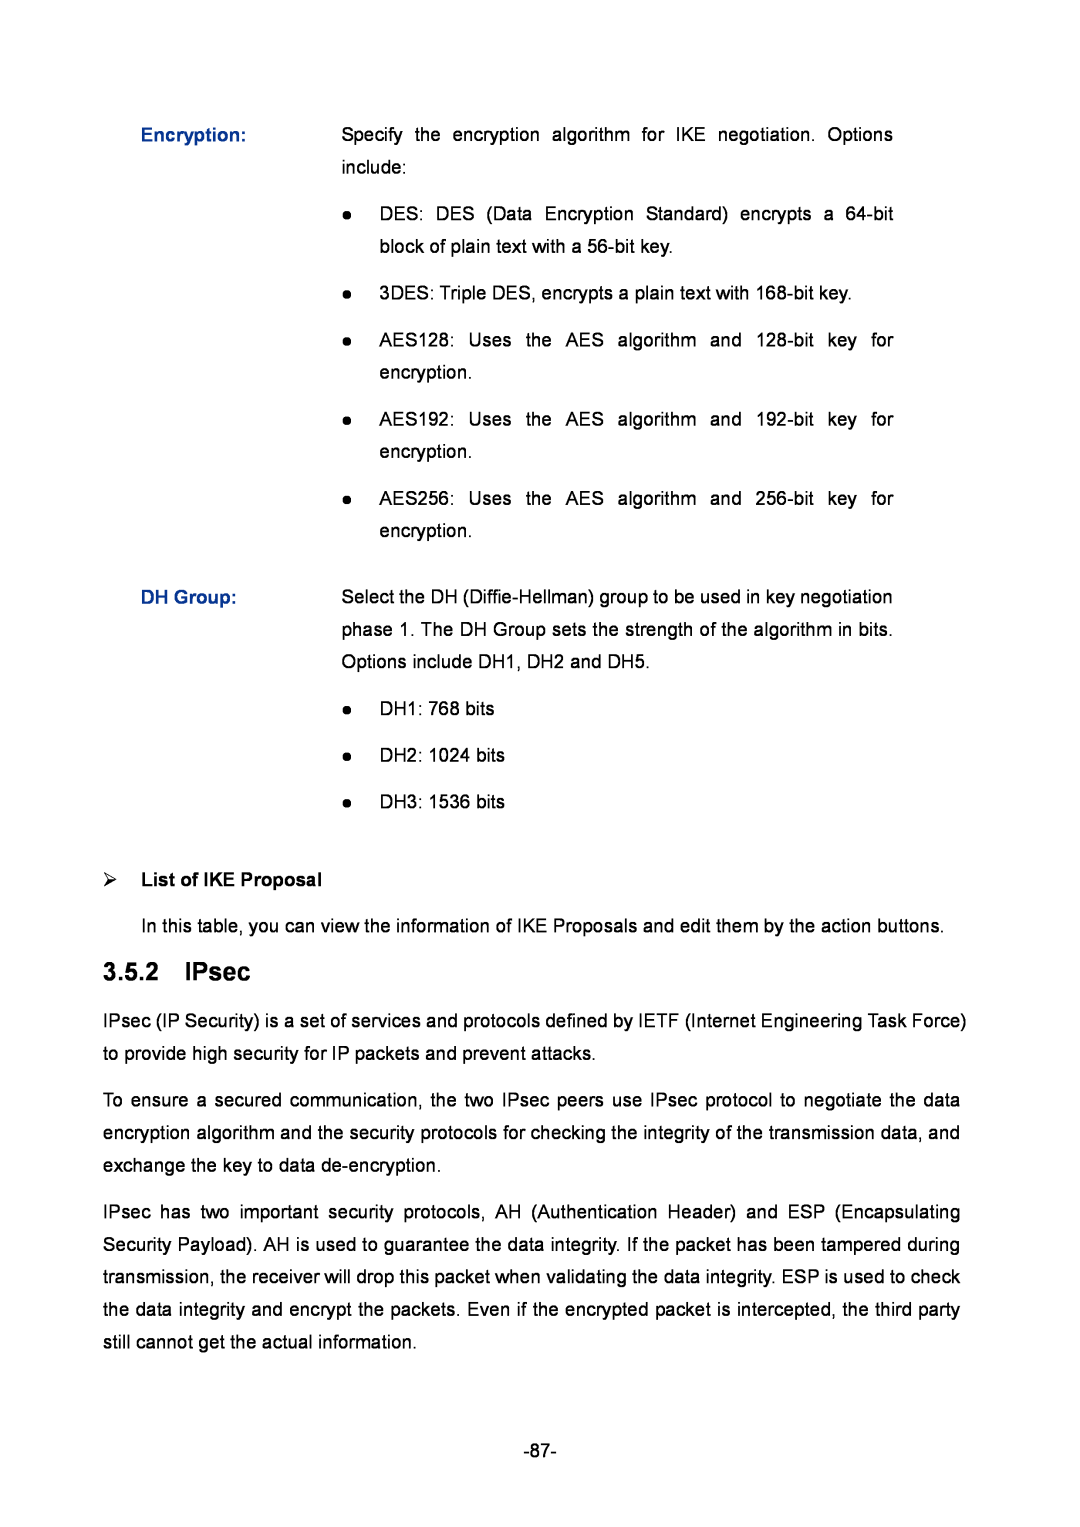 TP-Link TL-ER6020 manual IPsec,  List of IKE Proposal 